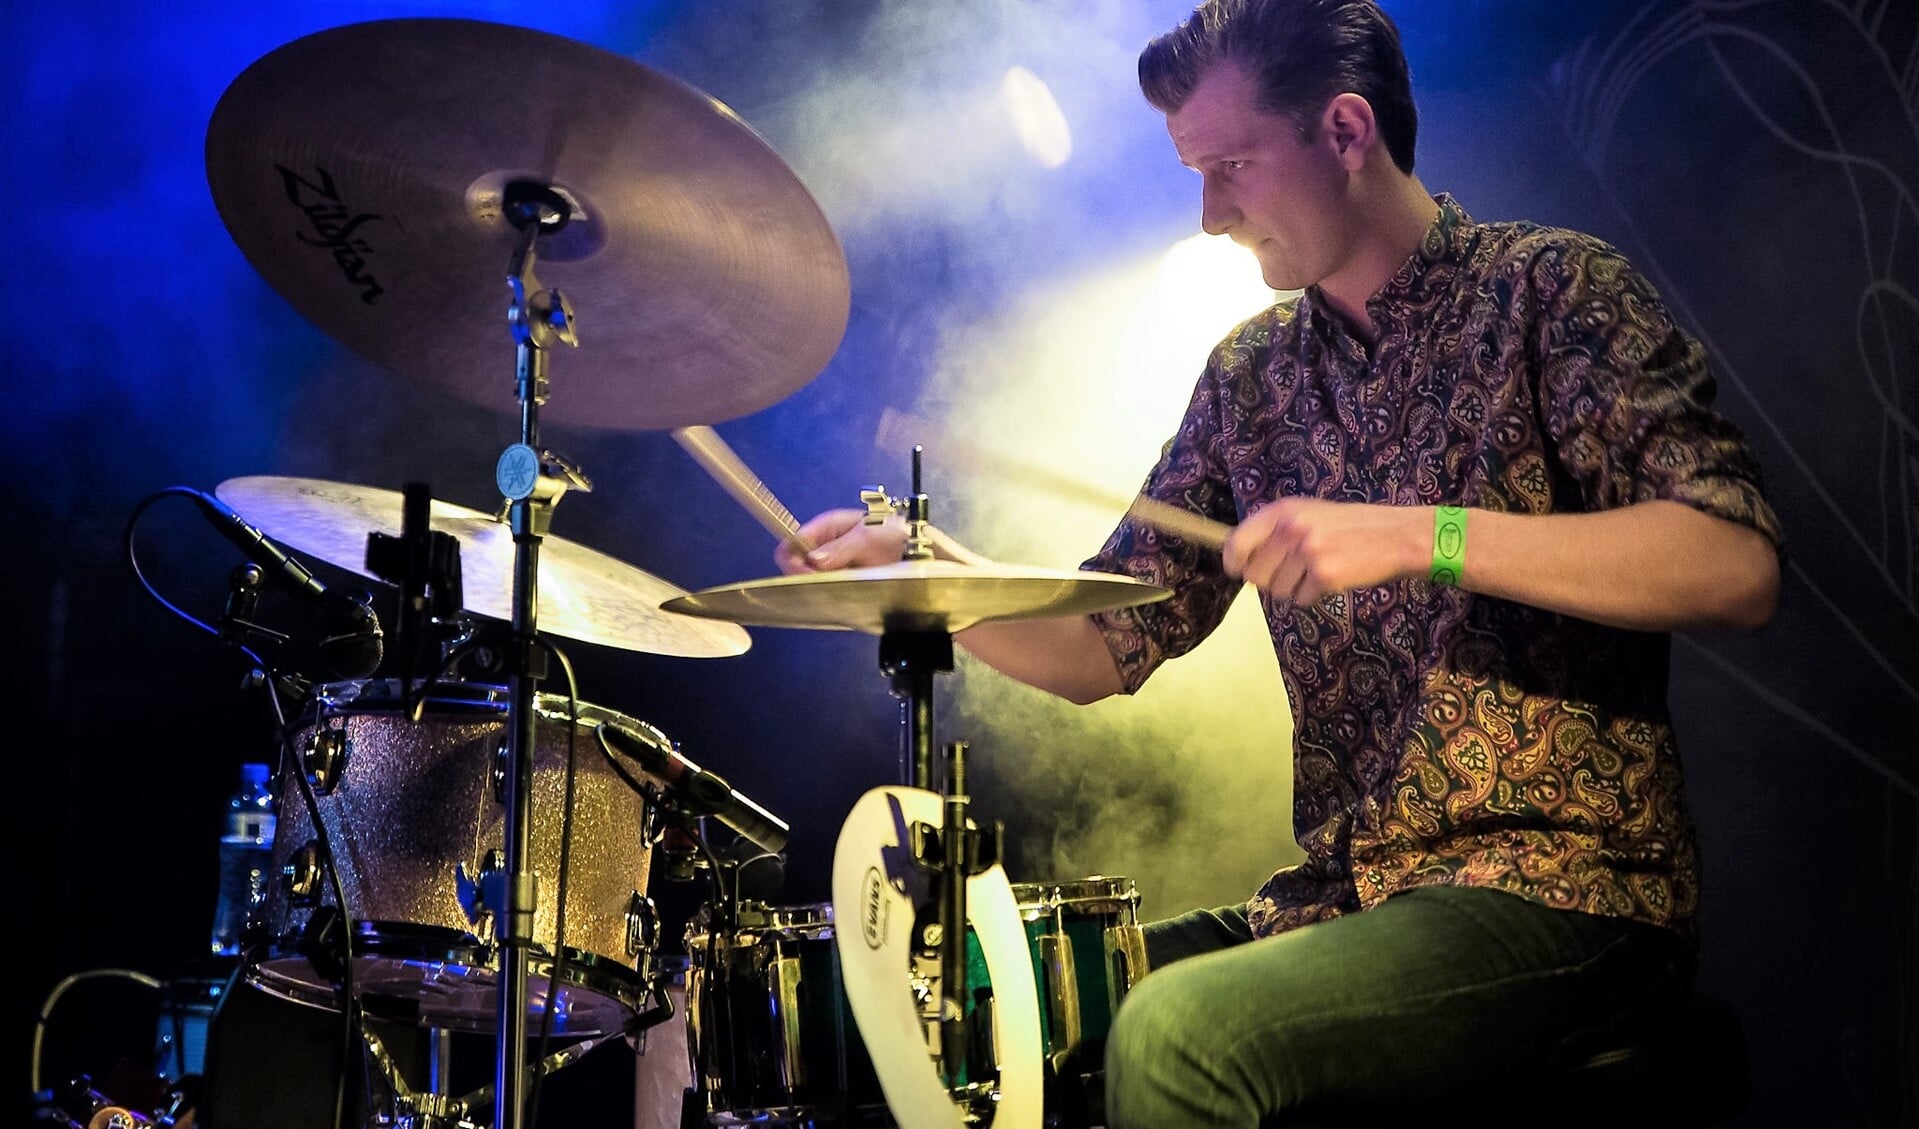 Al drie jaar geeft de gepassioneerde drummer Koen van Dijk drumles aan met name kinderen, maar ook volwassenen (foto: Oscar Schenk).